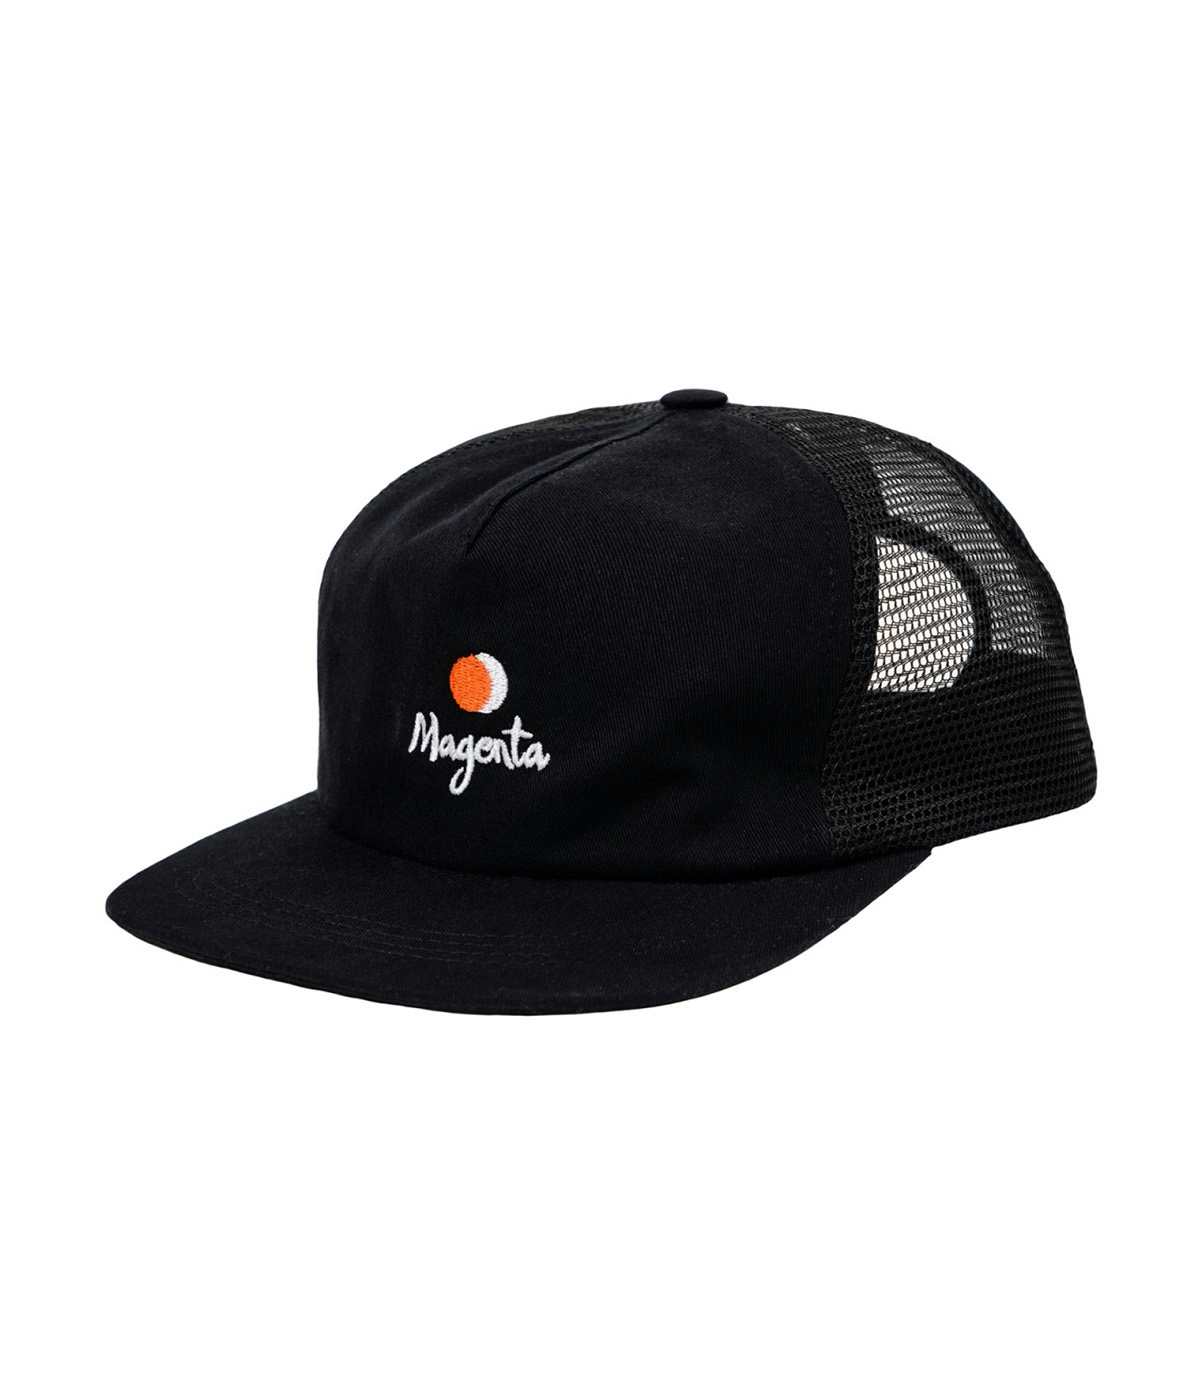 Magenta Skateboards Cap Vision Trucker Hat Black